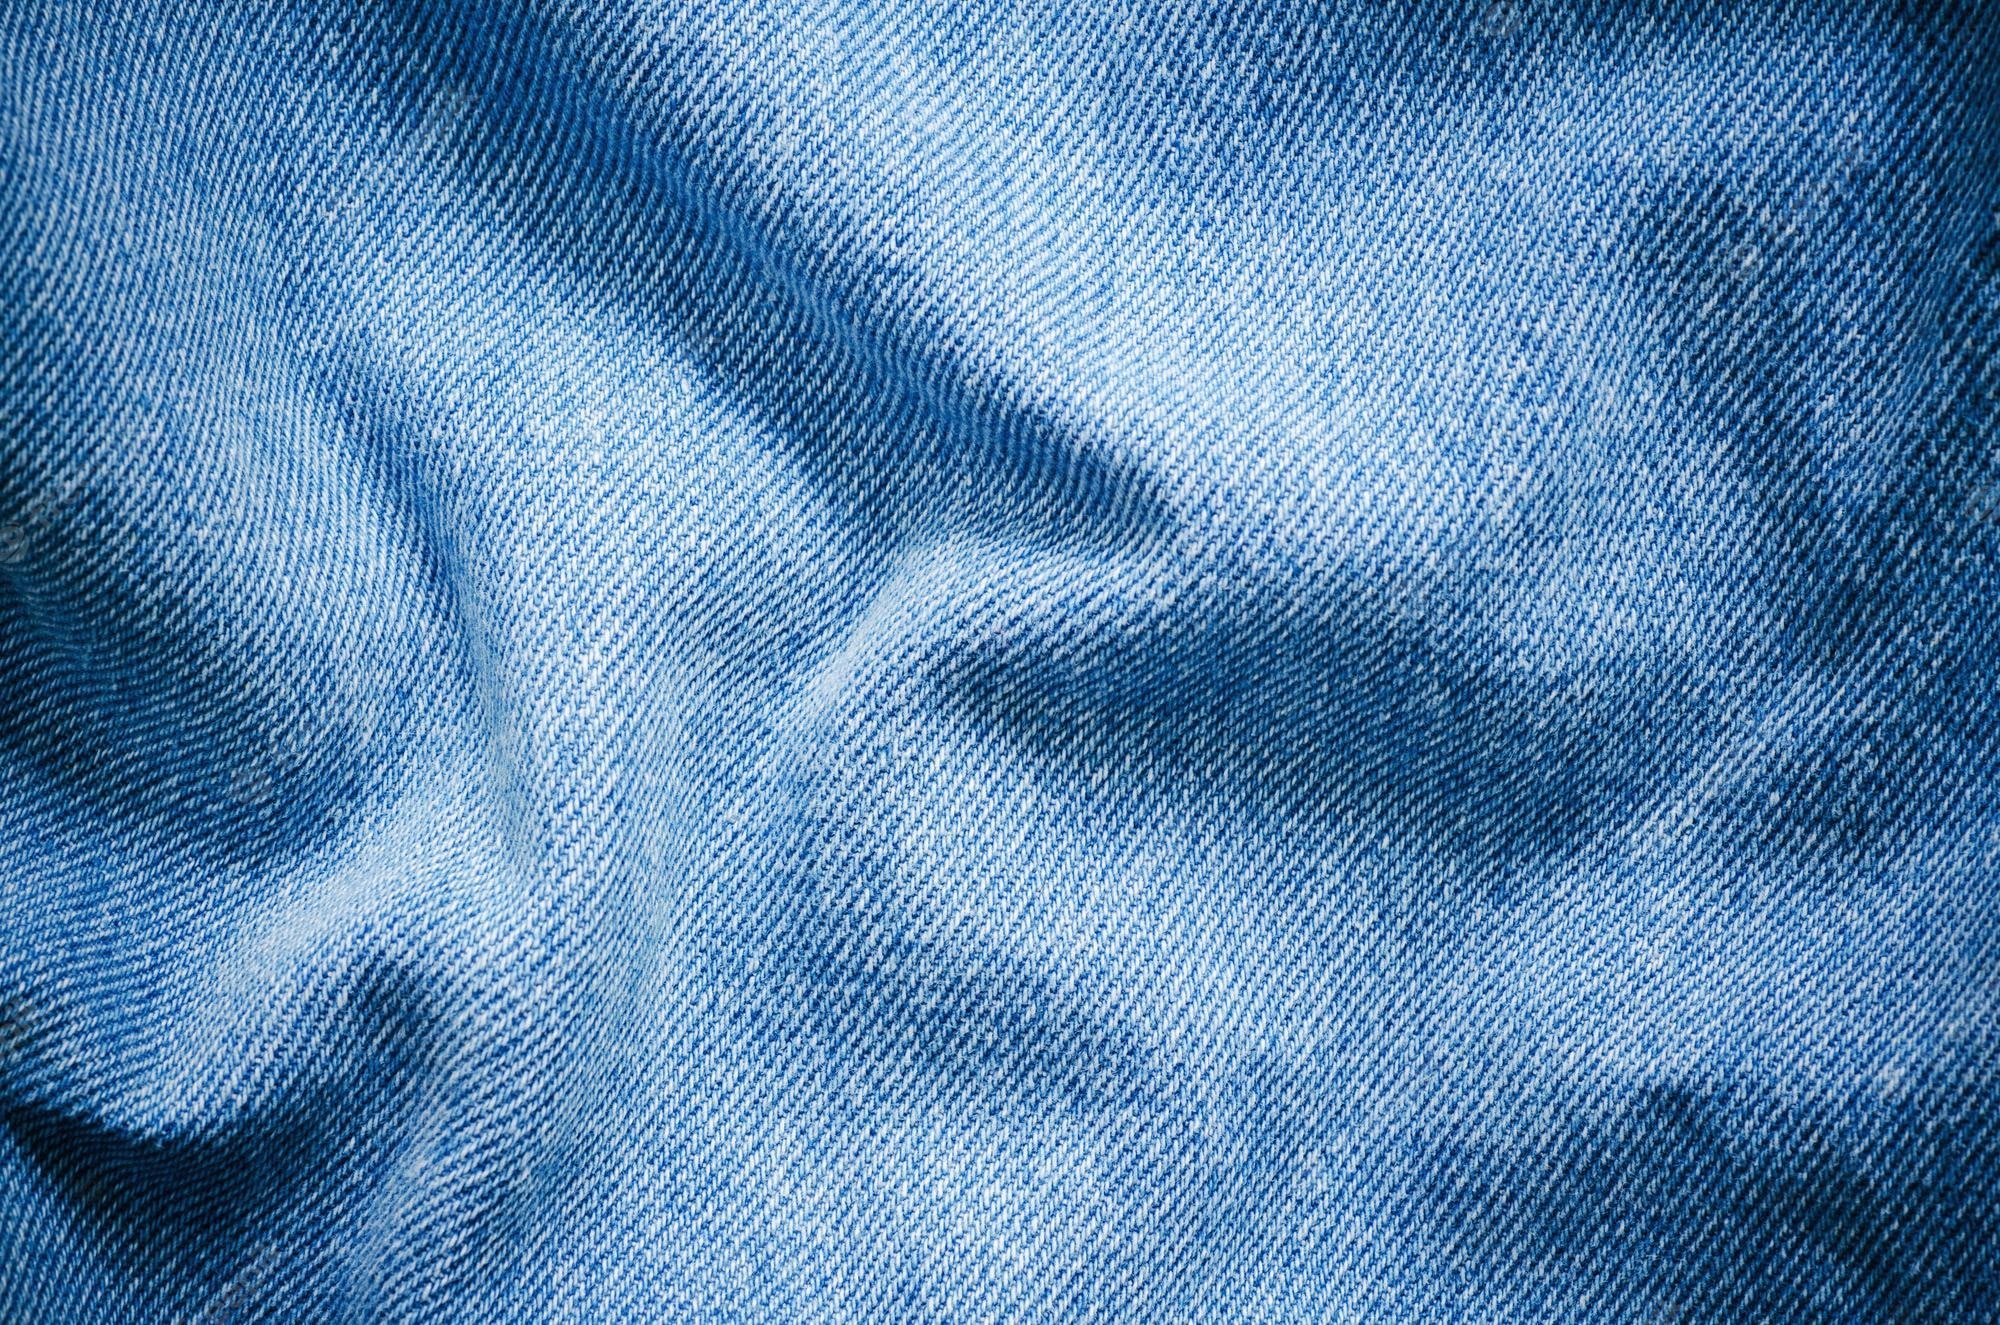 Текстура джинсов. Джинсовая ткань. Фактура джинсовой ткани. Текстура джинсовой ткани. Материал джинс.